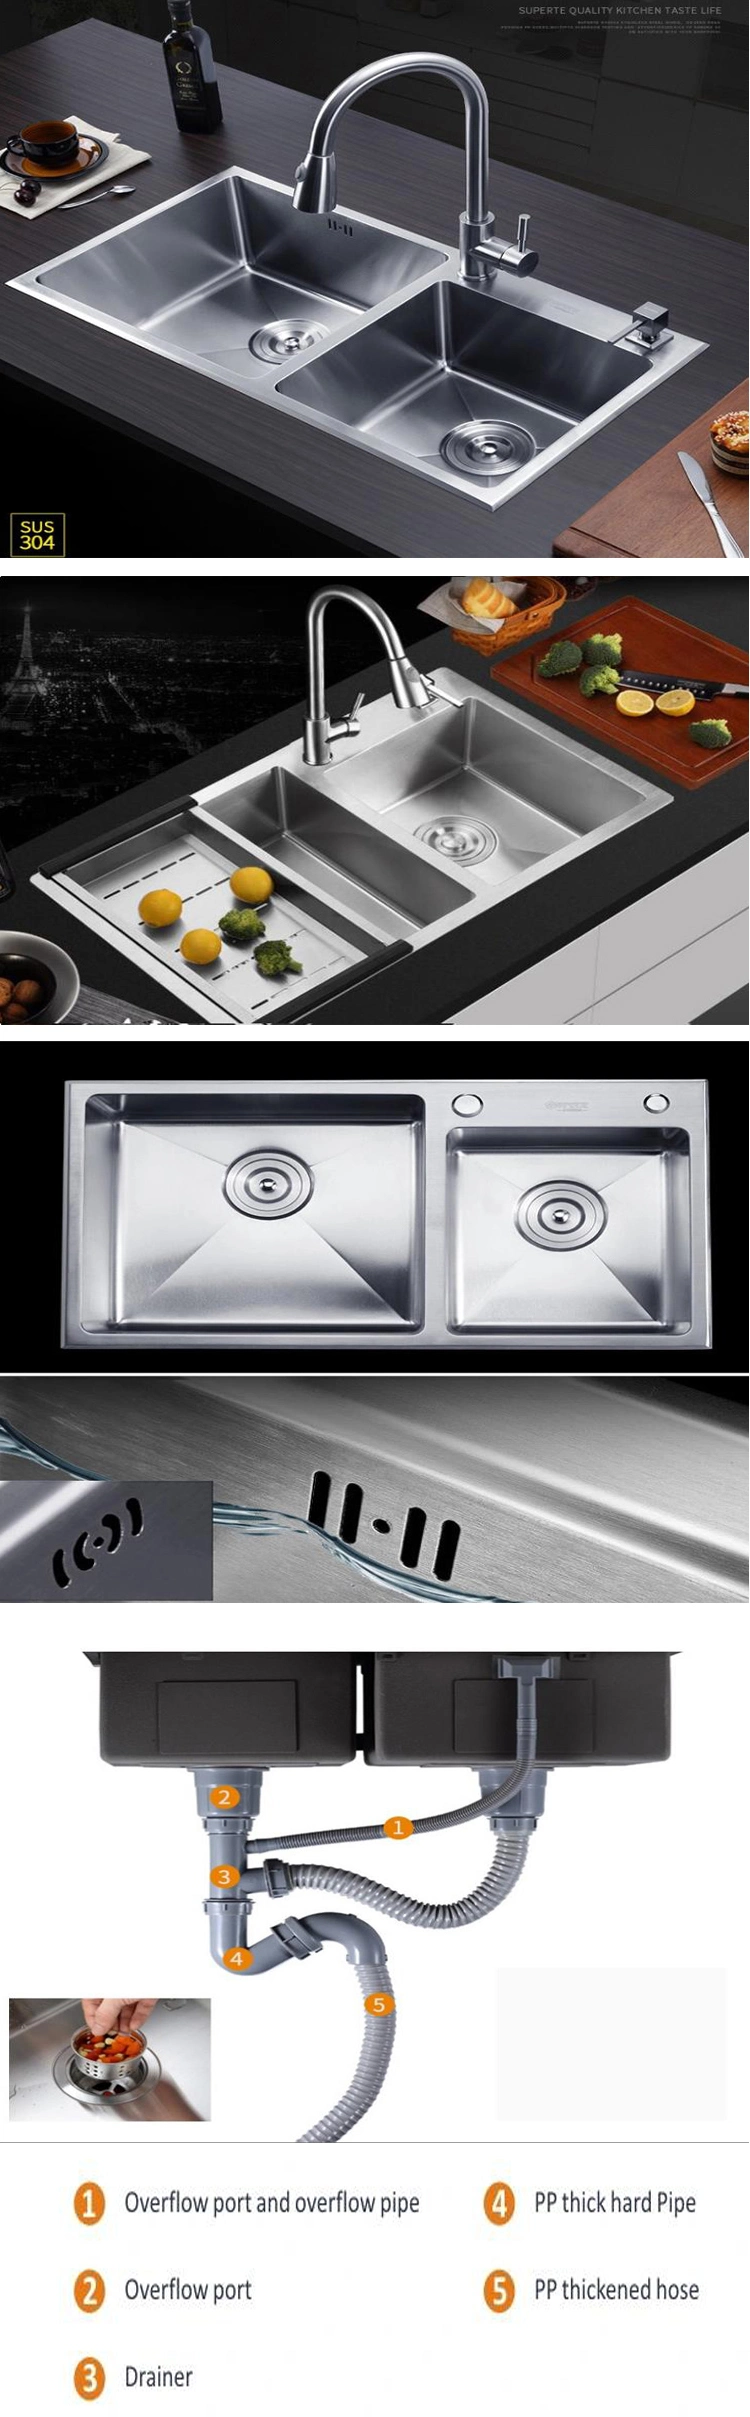 Professional Manufacture Kitchen Sink Stainless Steel Kitchen Undermounter Sink Kitchen Faucet Kitchen Sink Accessories